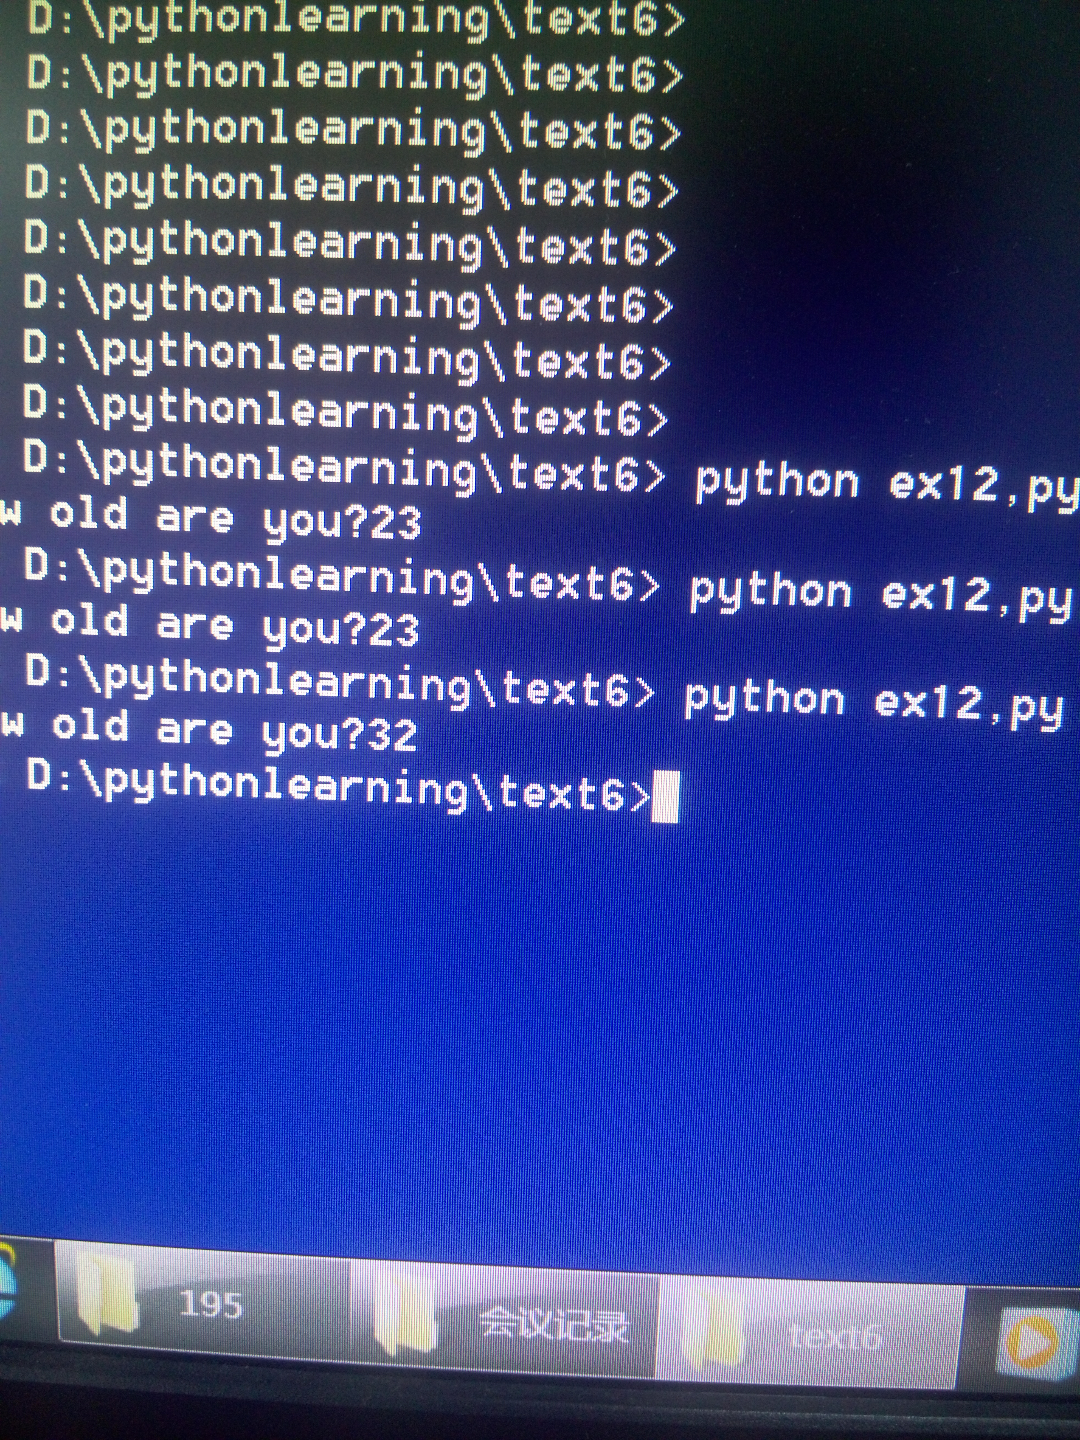 笨办法学python习题12? - Python